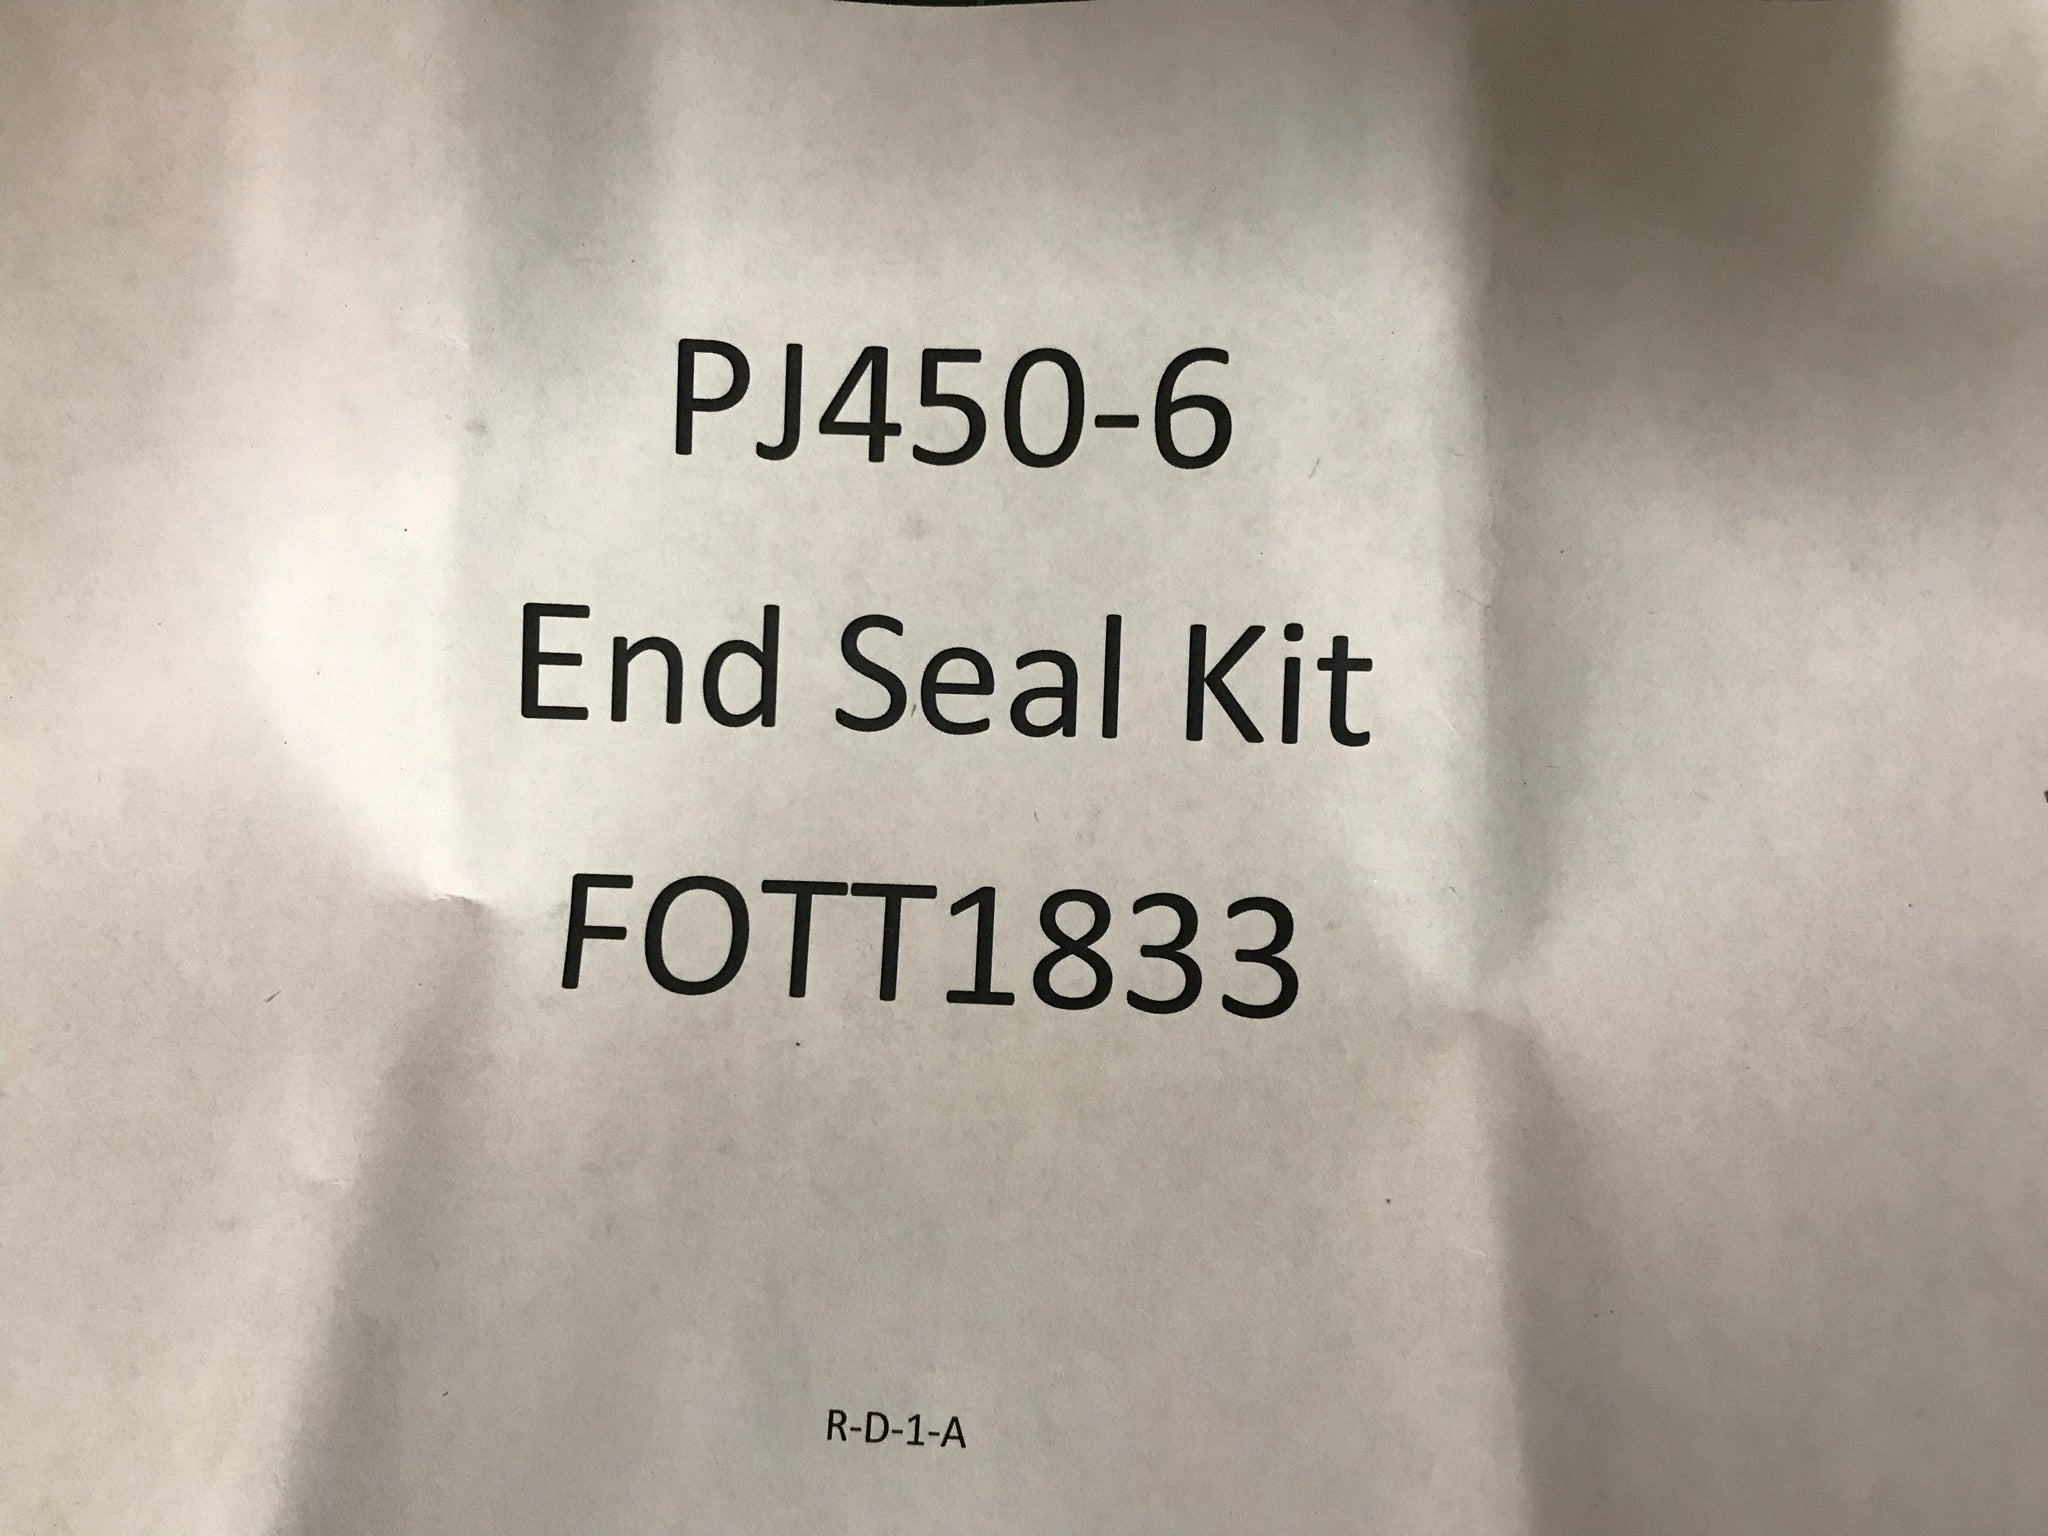 End Seal Kit